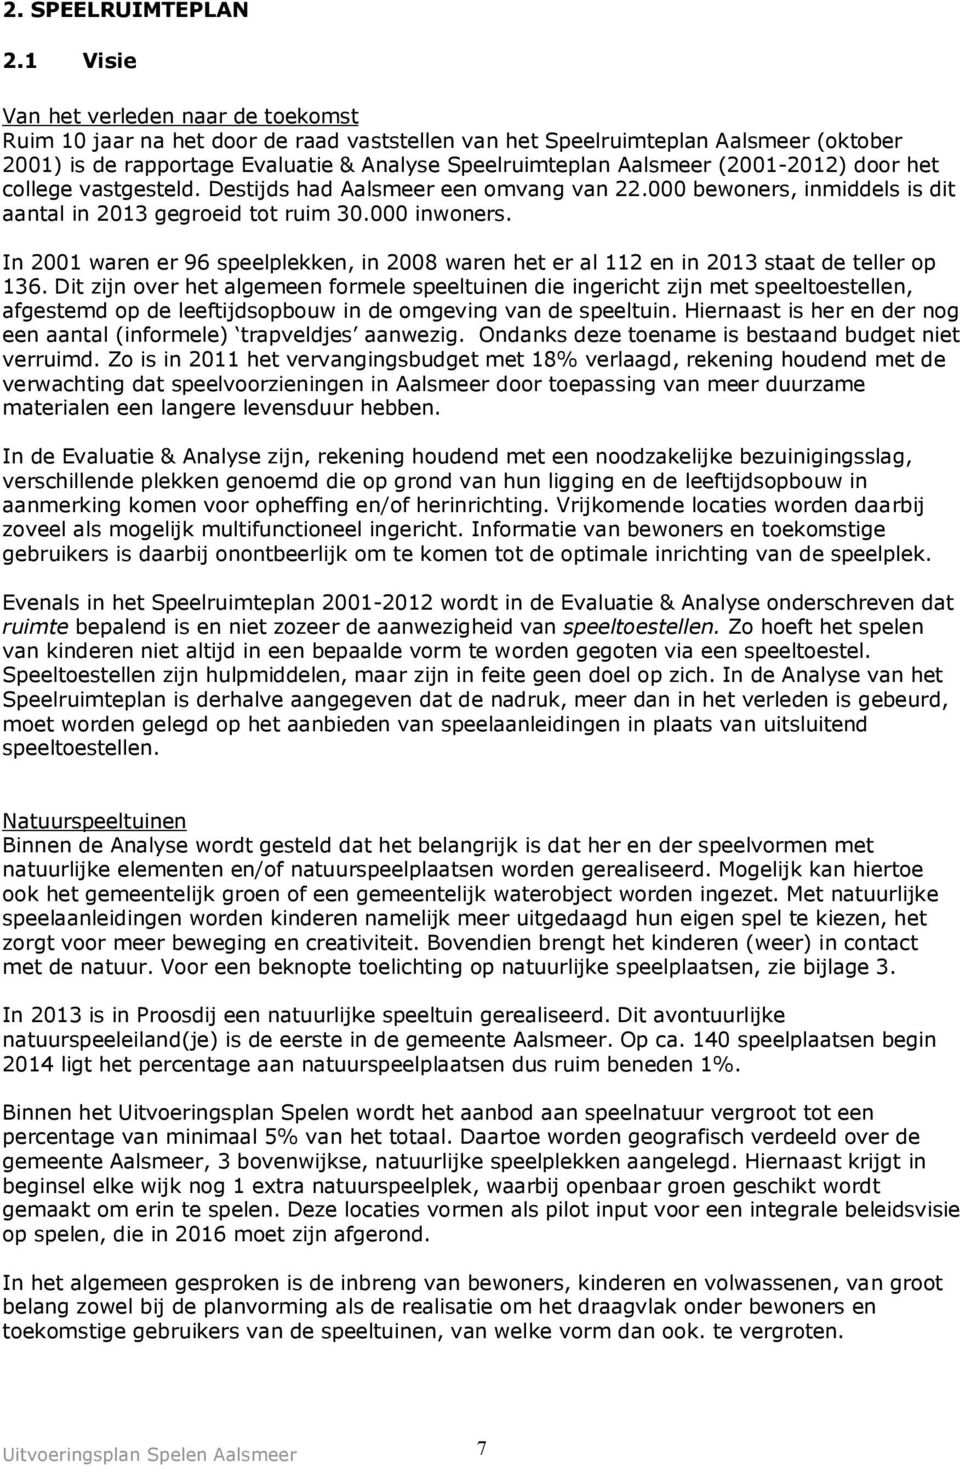 (2001-2012) door het college vastgesteld. Destijds had Aalsmeer een omvang van 22.000 bewoners, inmiddels is dit aantal in 2013 gegroeid tot ruim 30.000 inwoners.